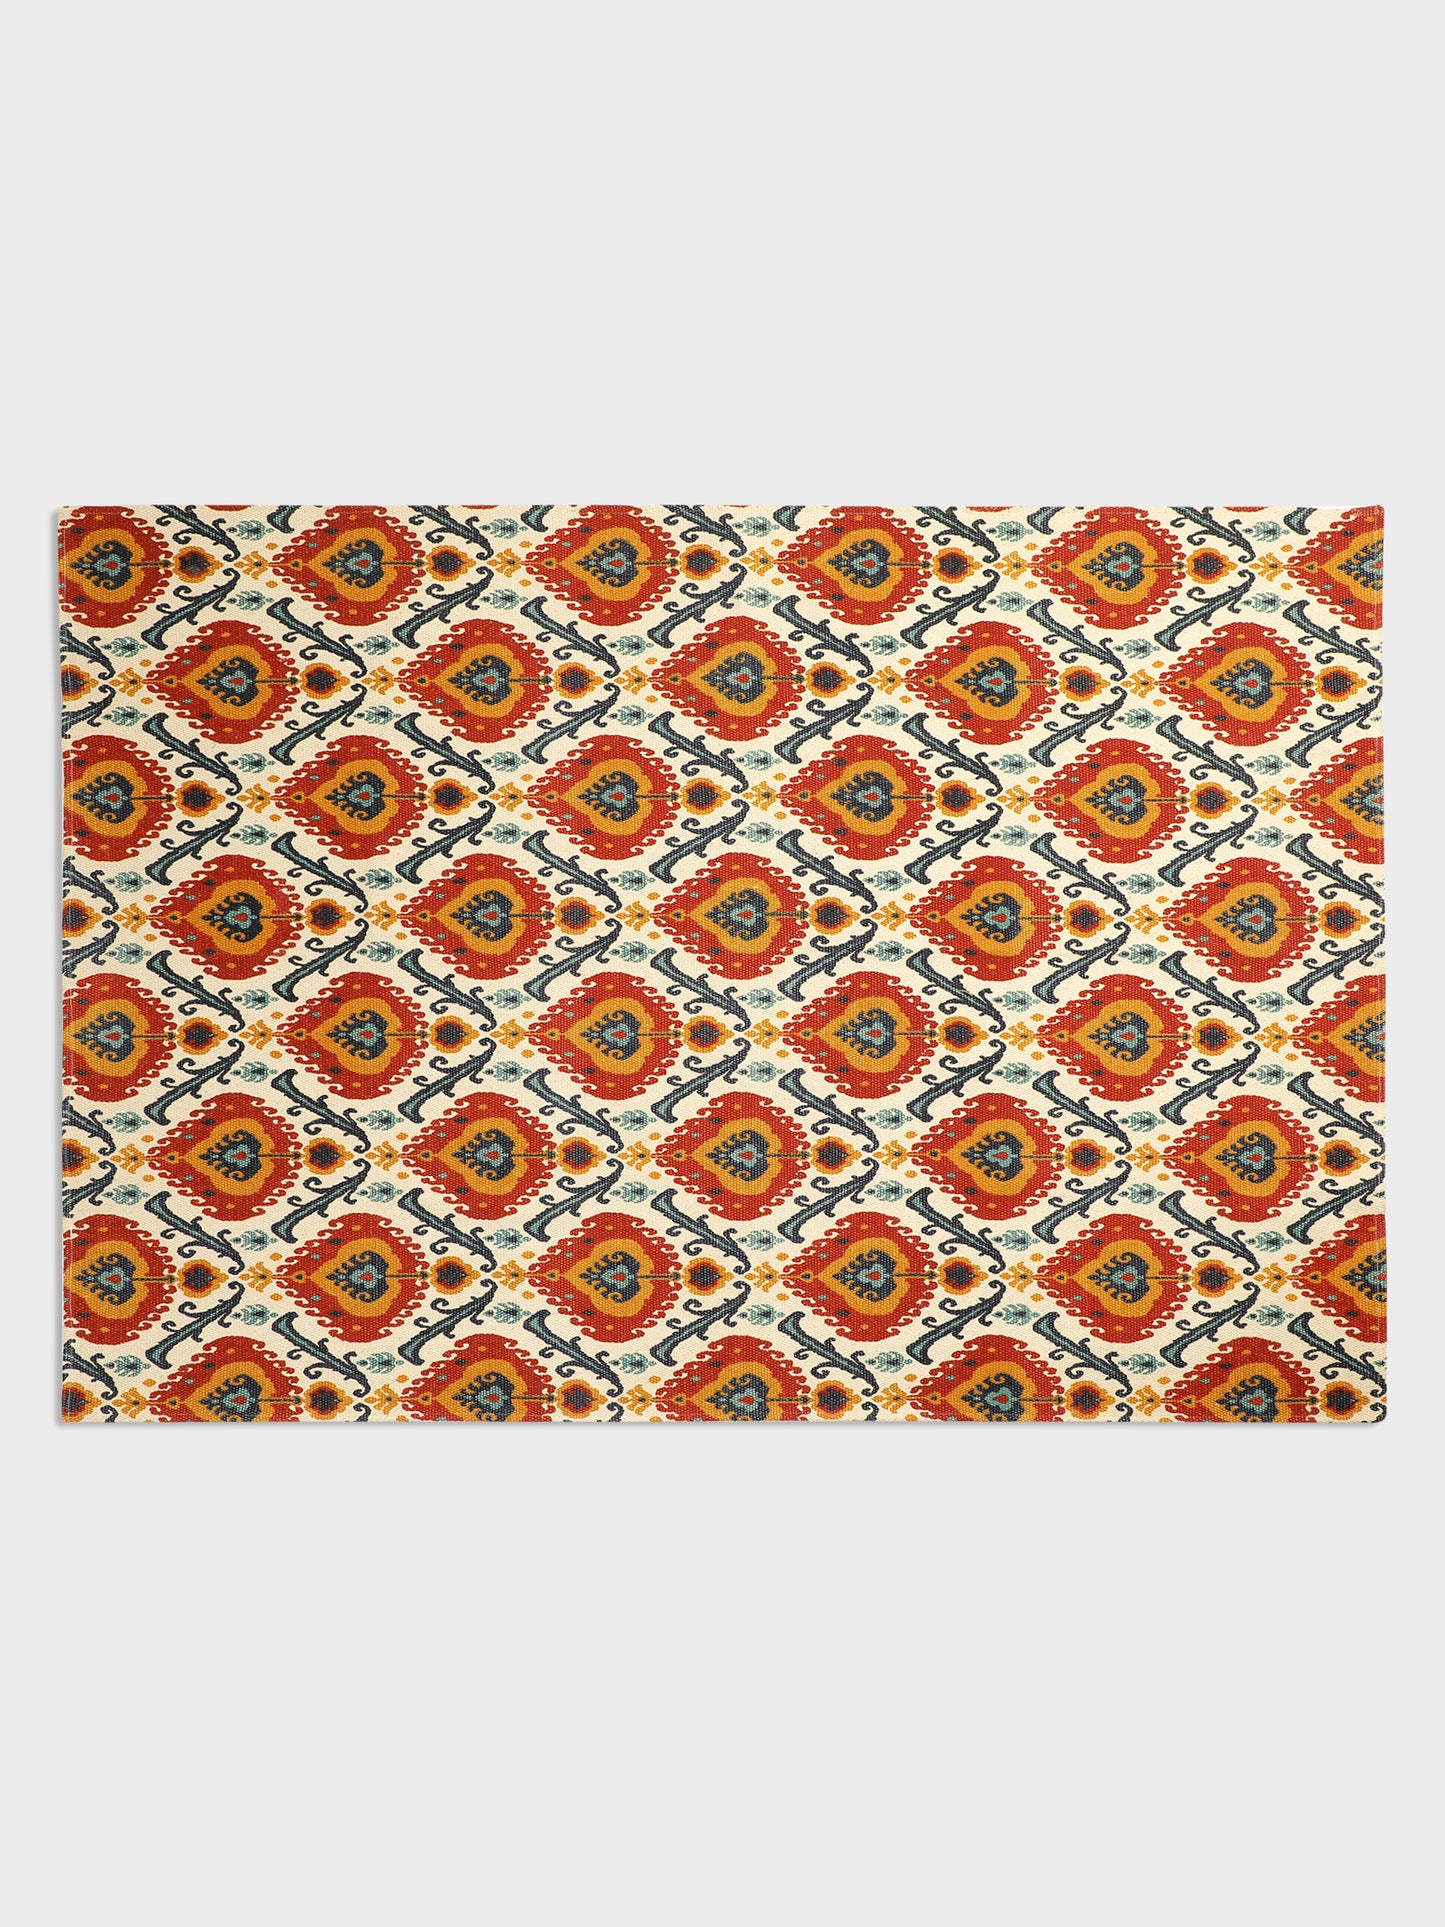 Gul Nilofer "4x5.5"ft. Printed Cotton Carpet